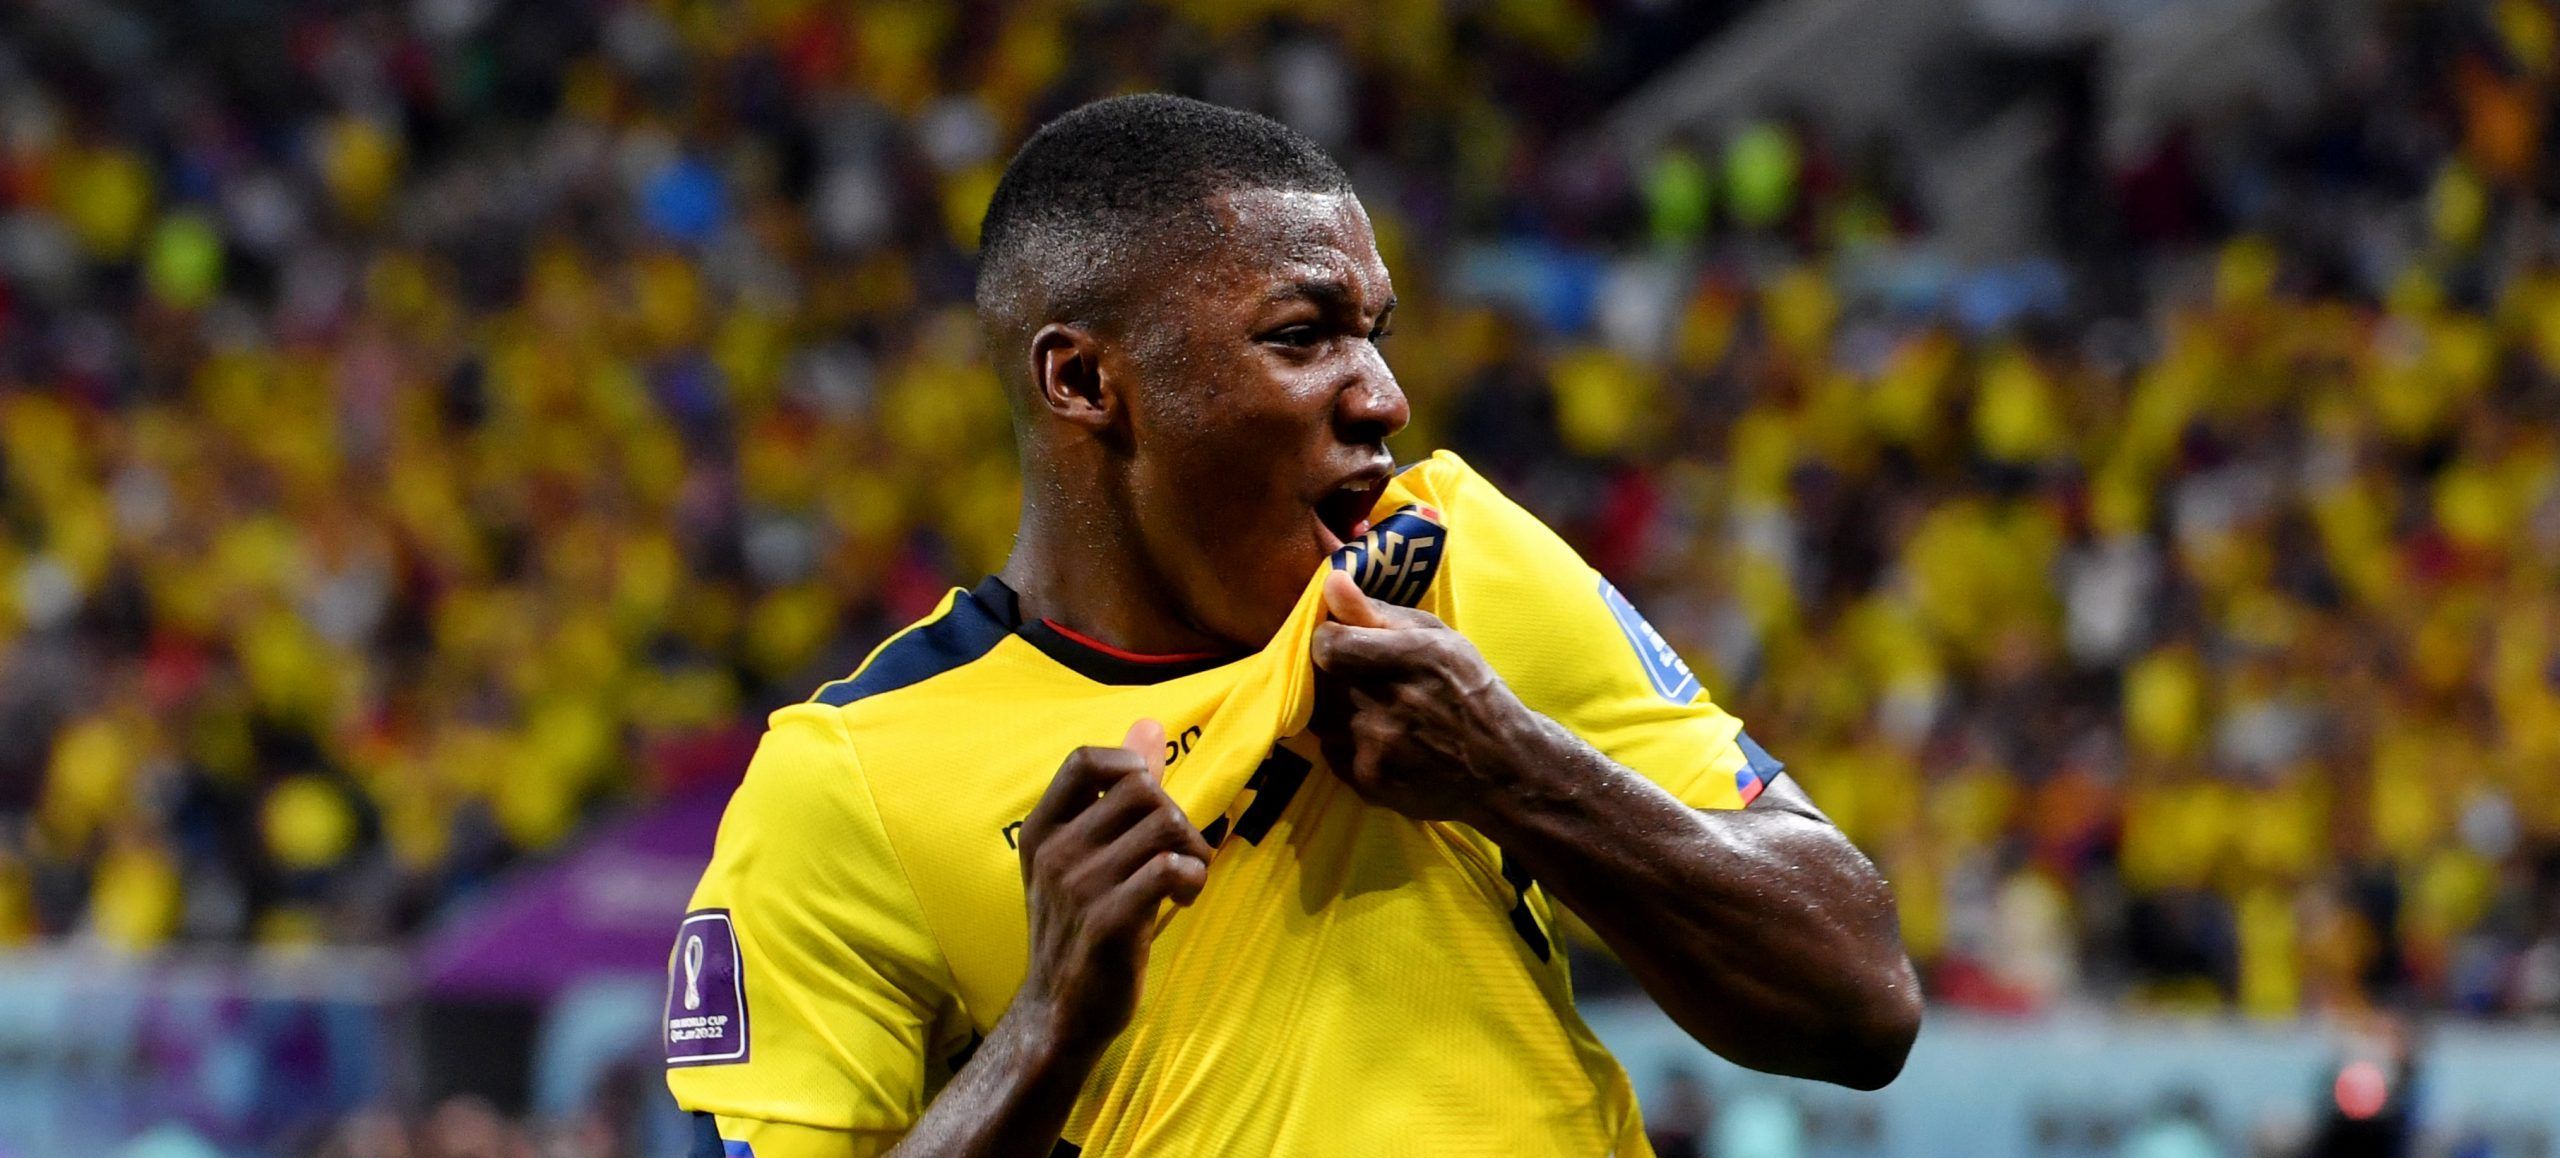 Ecuador's Moises Caicedo celebrates scoring their first goal vs Senegal at World Cup.